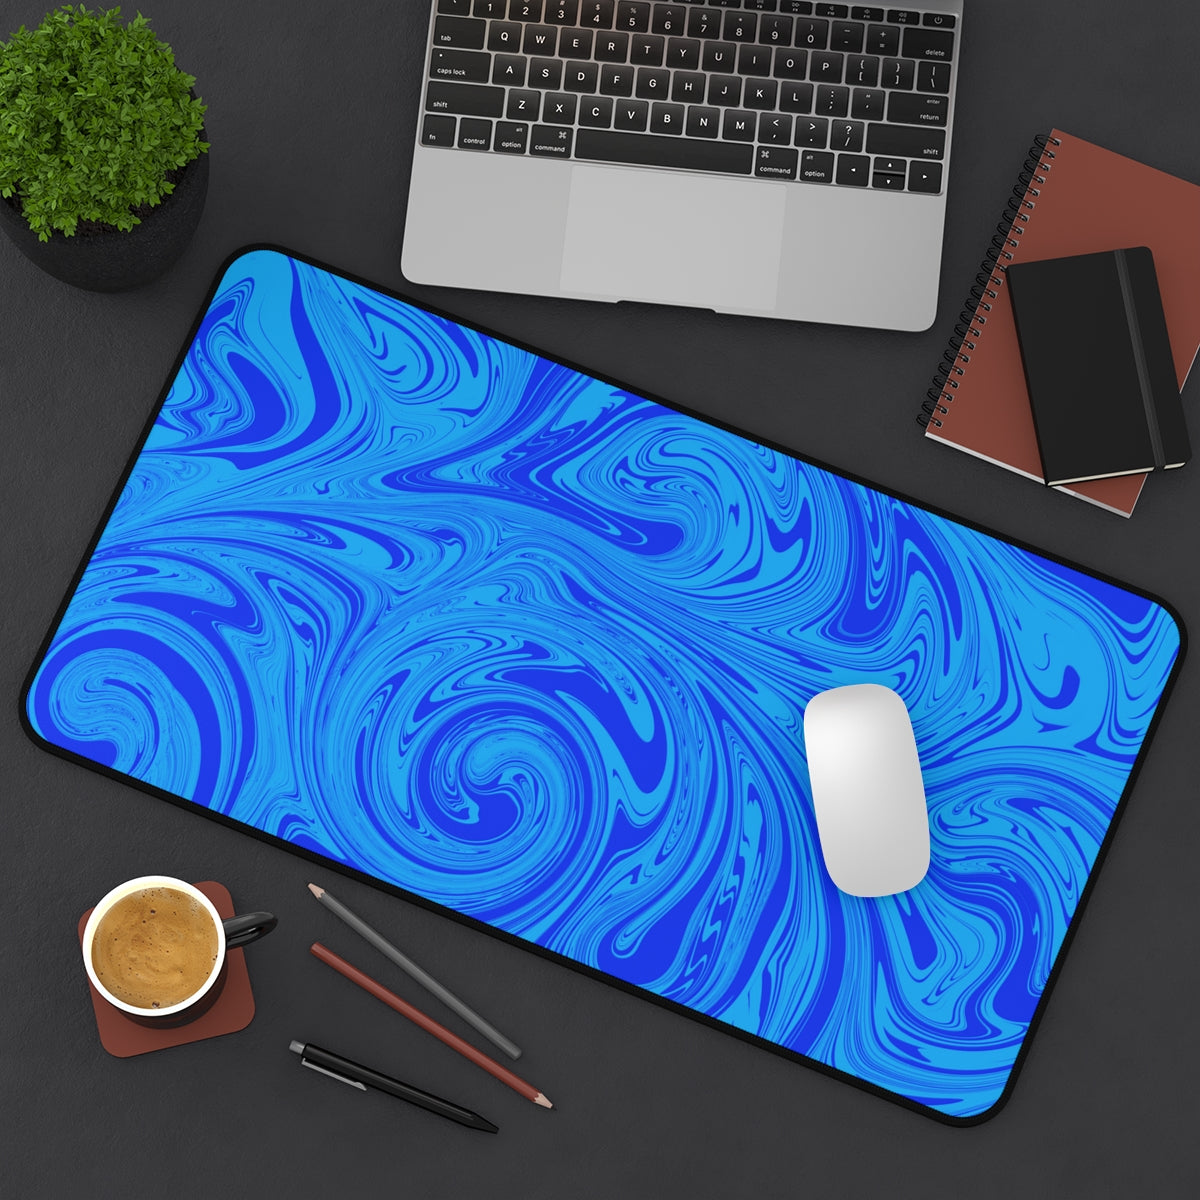 Blue Swirl Desk Mat - Desk Cookies